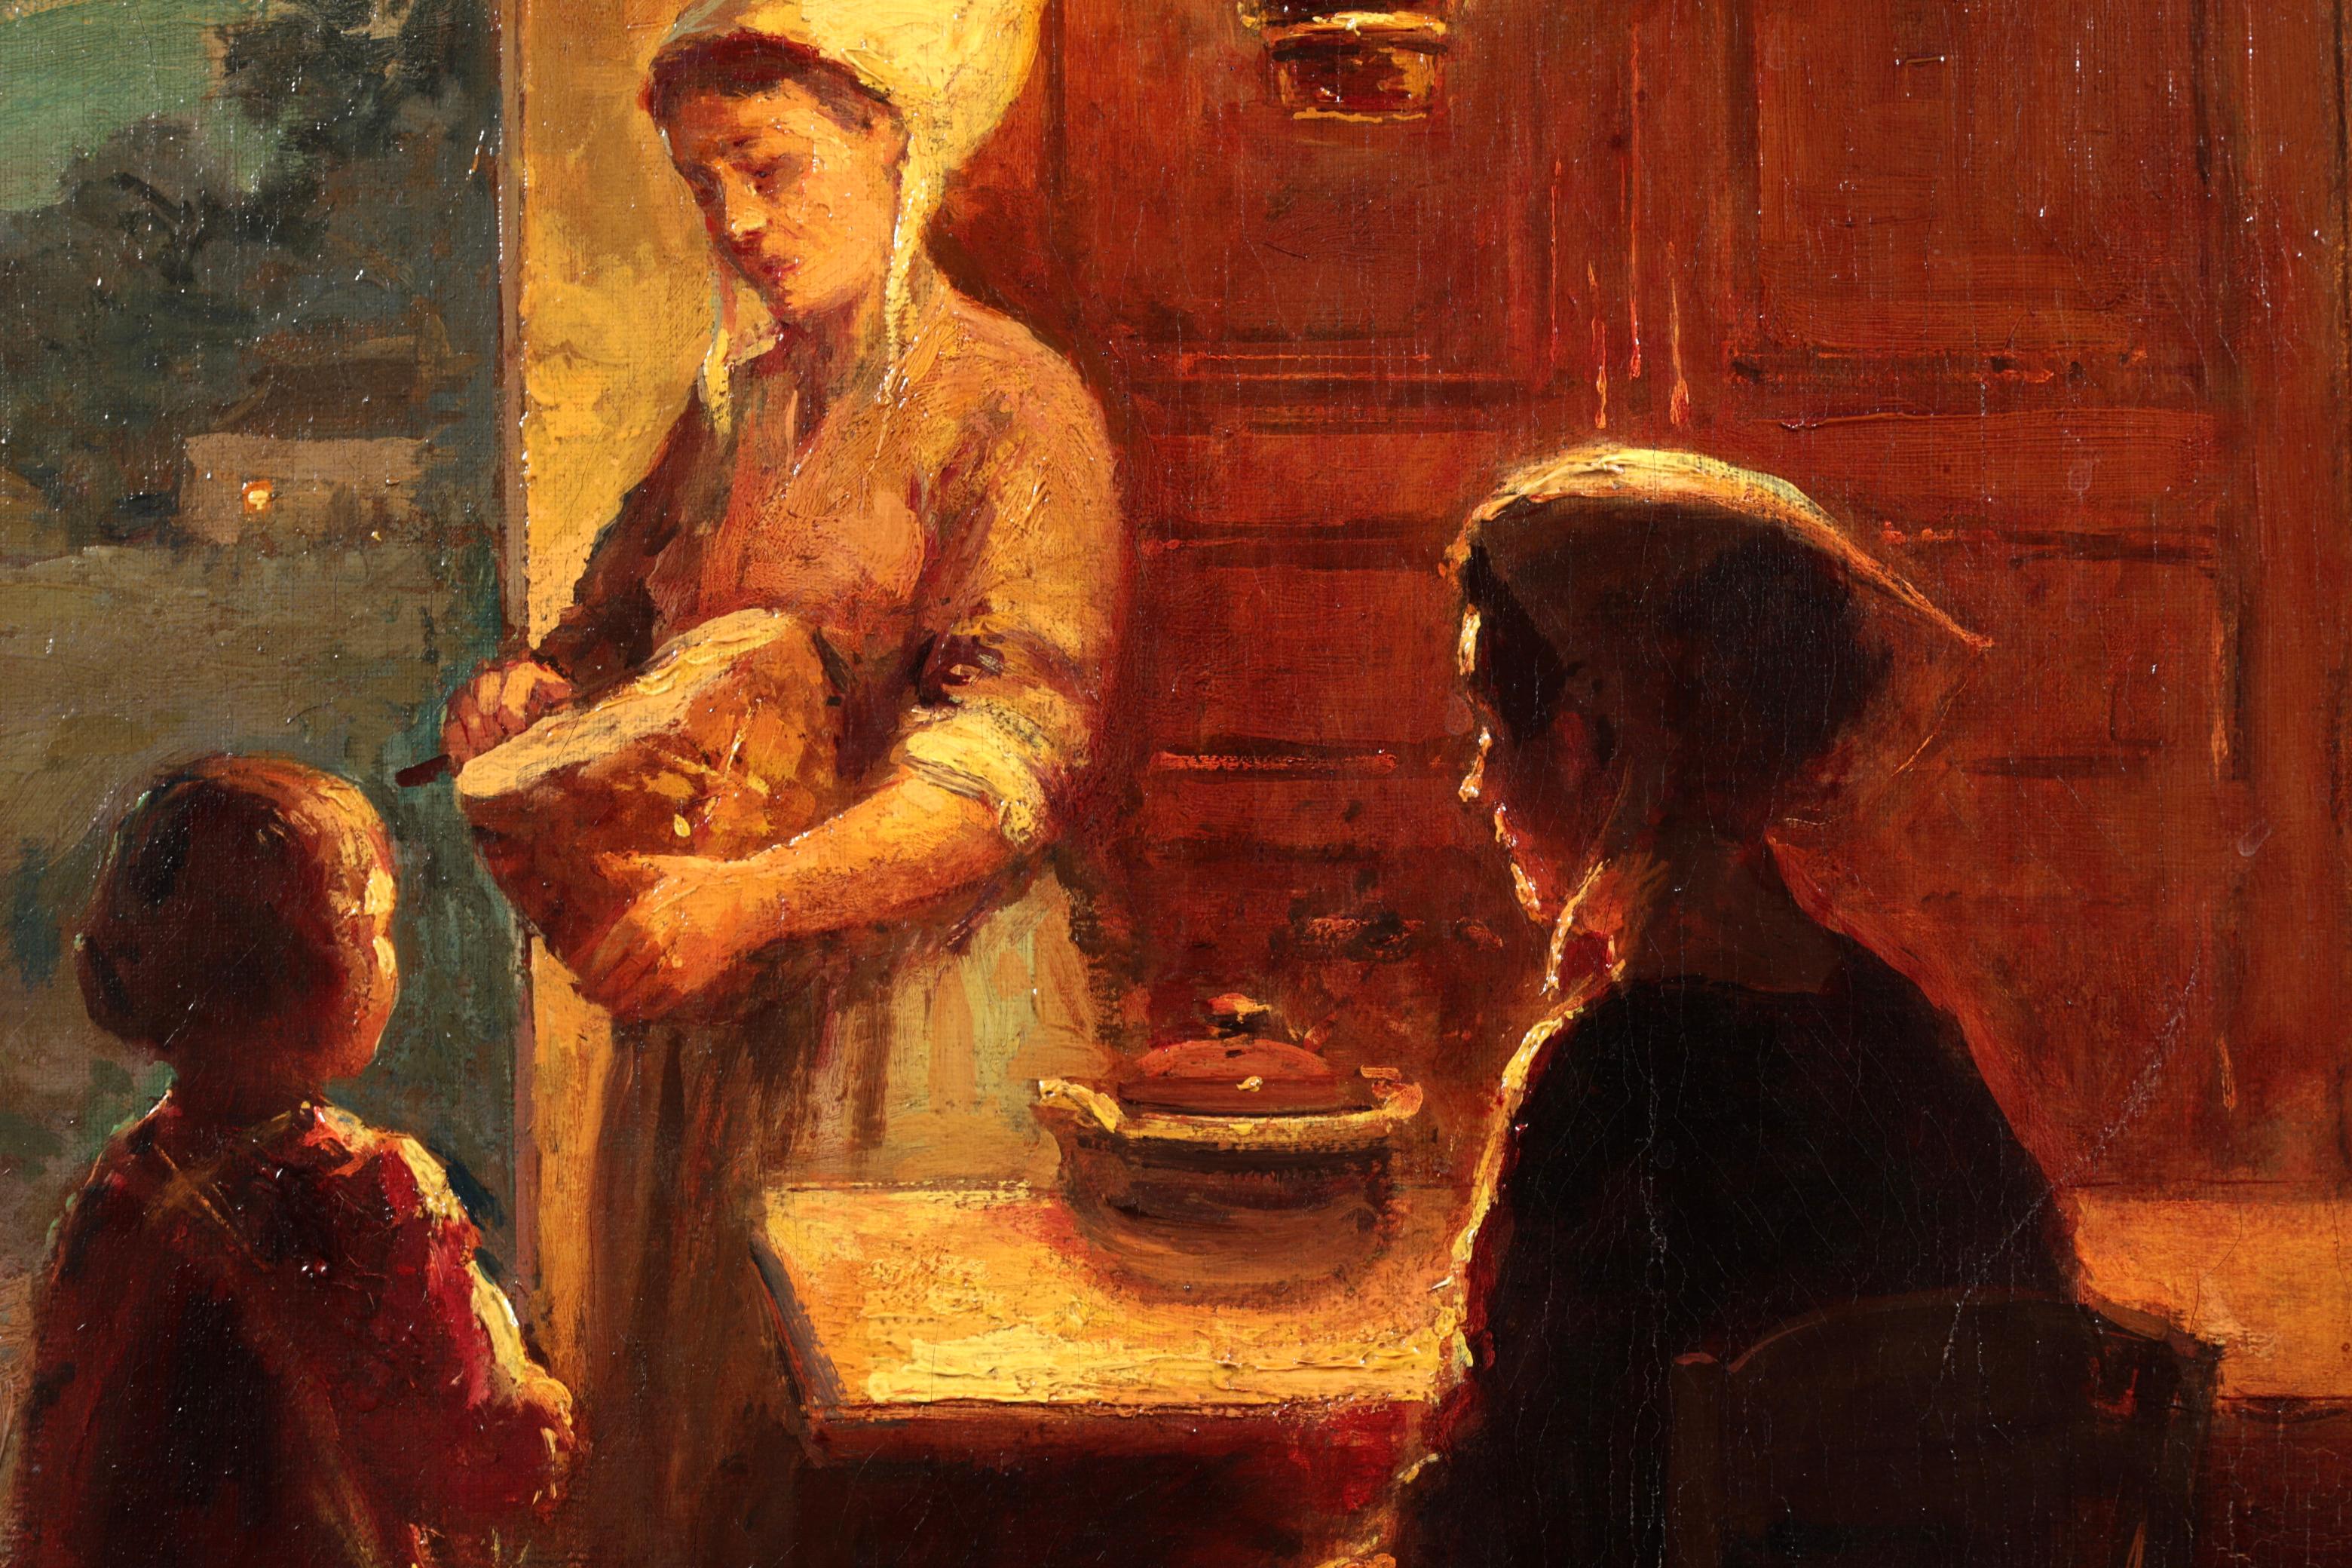 Huile sur toile signée de figures dans un intérieur circa 1925 par le peintre impressionniste français Edouard Leon Cortes. Cette œuvre charmante et nostalgique représente une famille dans une scène de cuisine typiquement bretonne. Une dame est